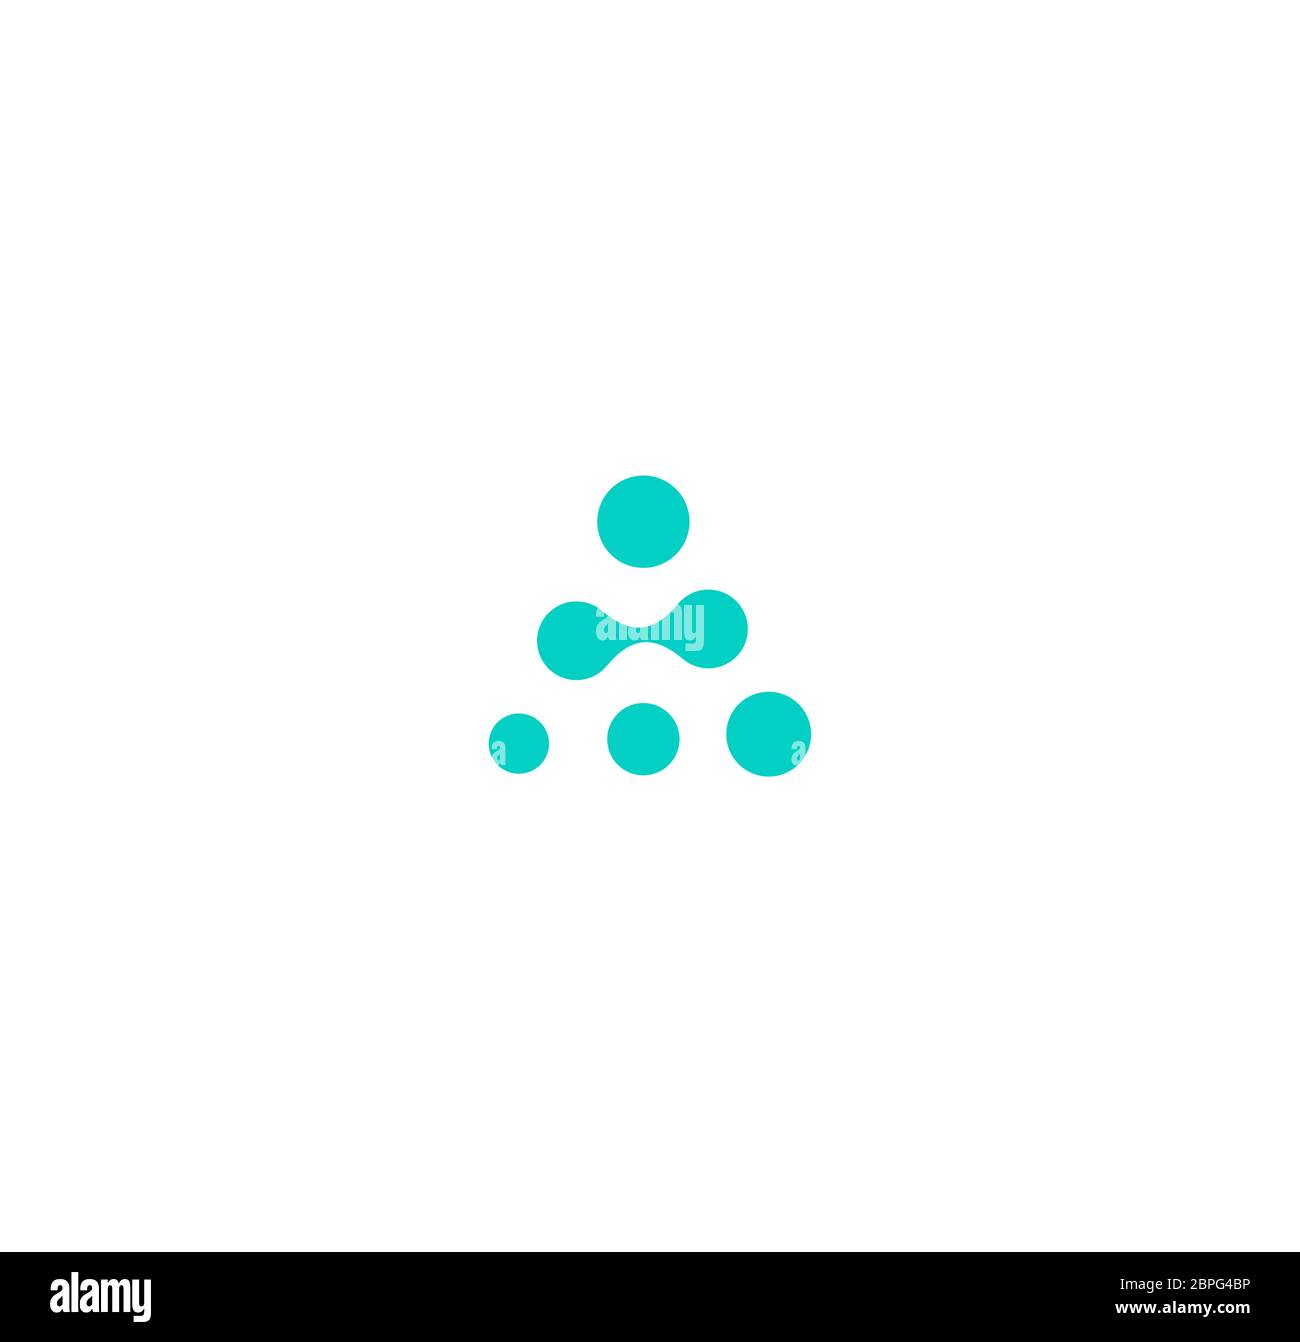 Stilisierter Buchstabe A, alphabetisches Element-Logo. Logo für Dots-Verbindungen. Digitale Innovation. Geschäftsmodell der Pyramide. Nervenzellen Netzwerk Vektor-Symbol Stock Vektor